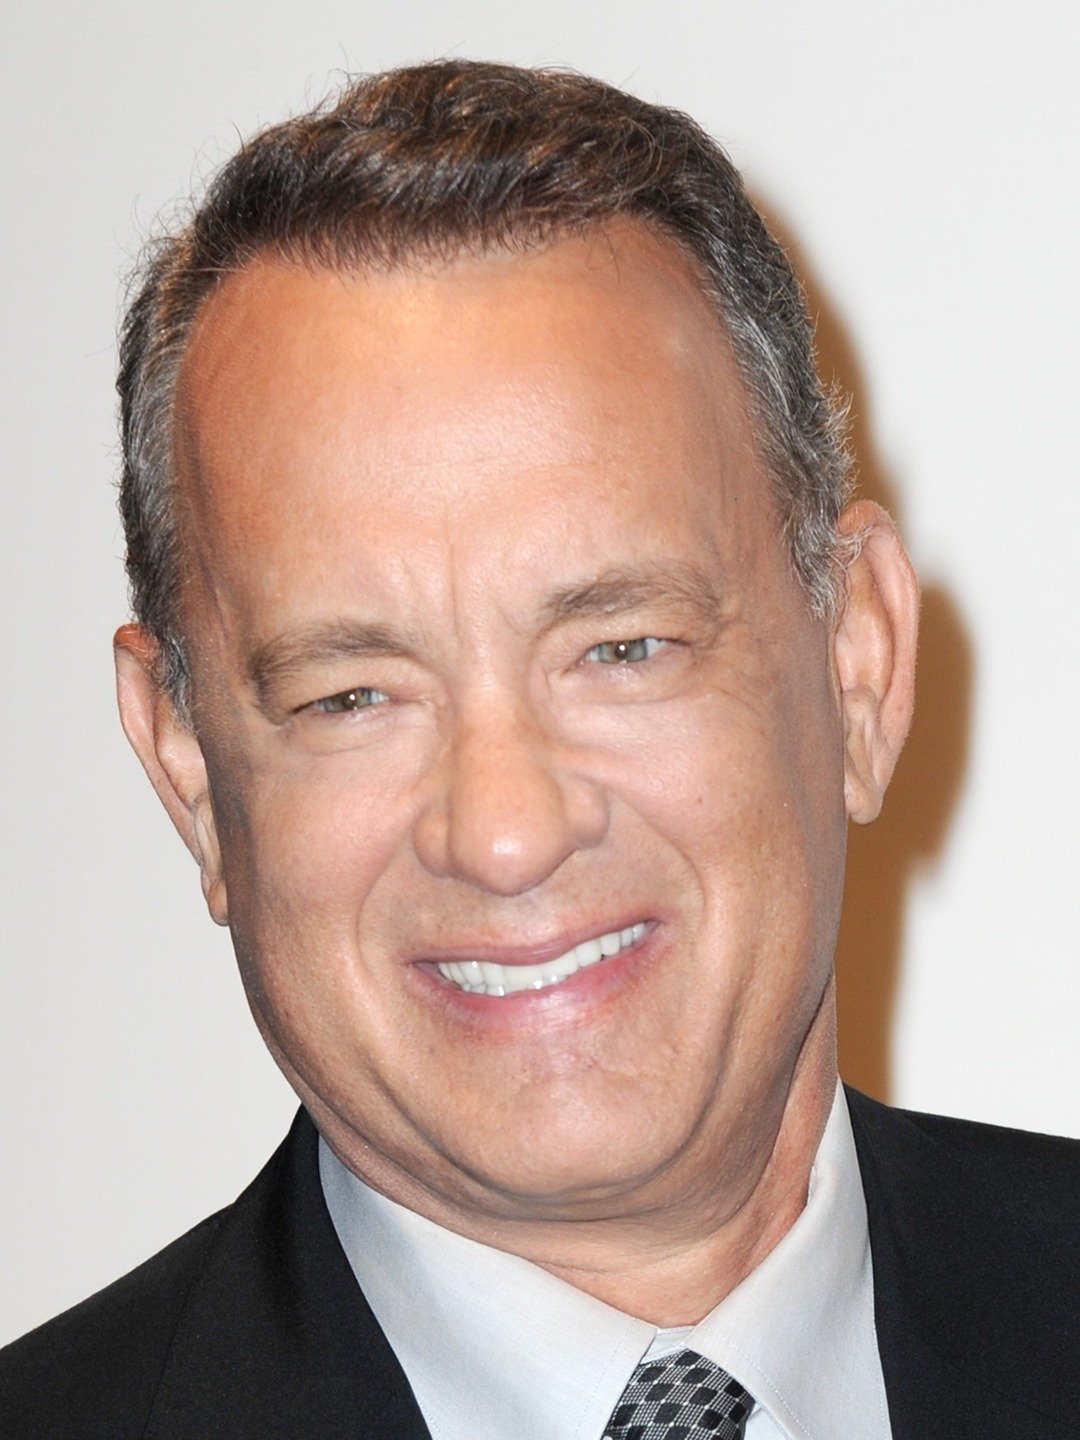 Aktori Tom Hanks, pozitiv ndaj koronavirus